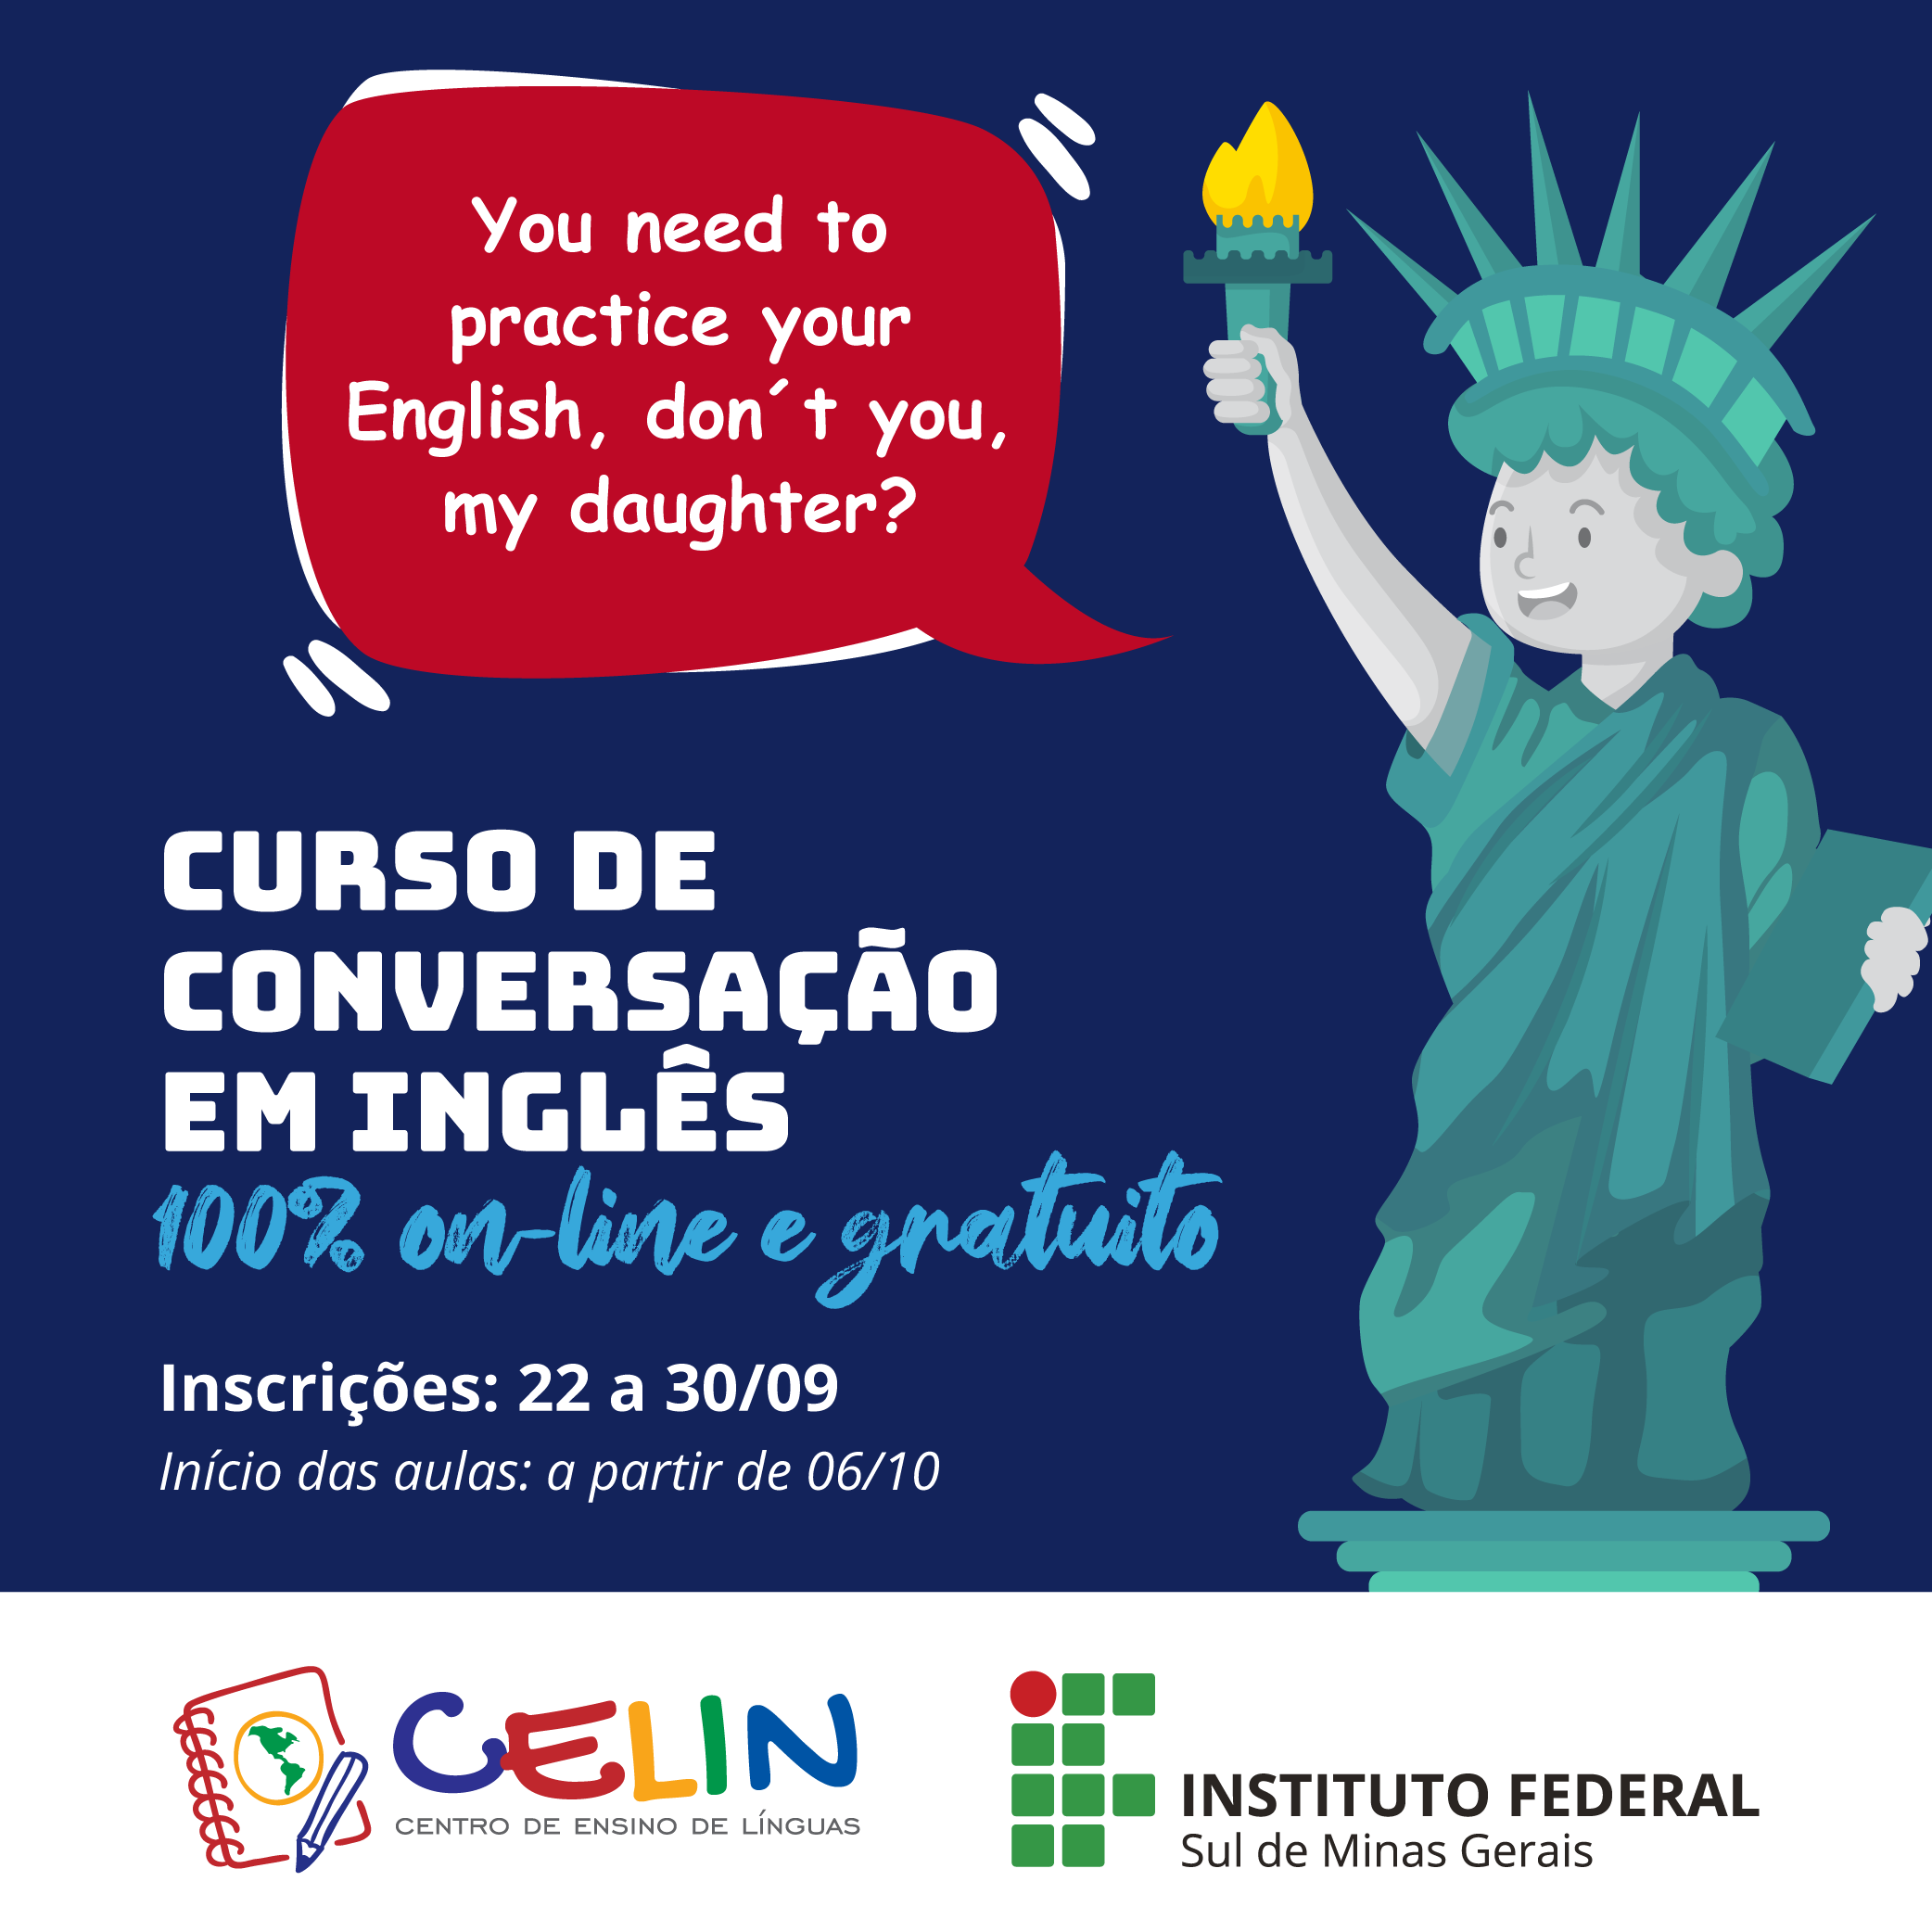 Curso Conversacao Ingles post instagram